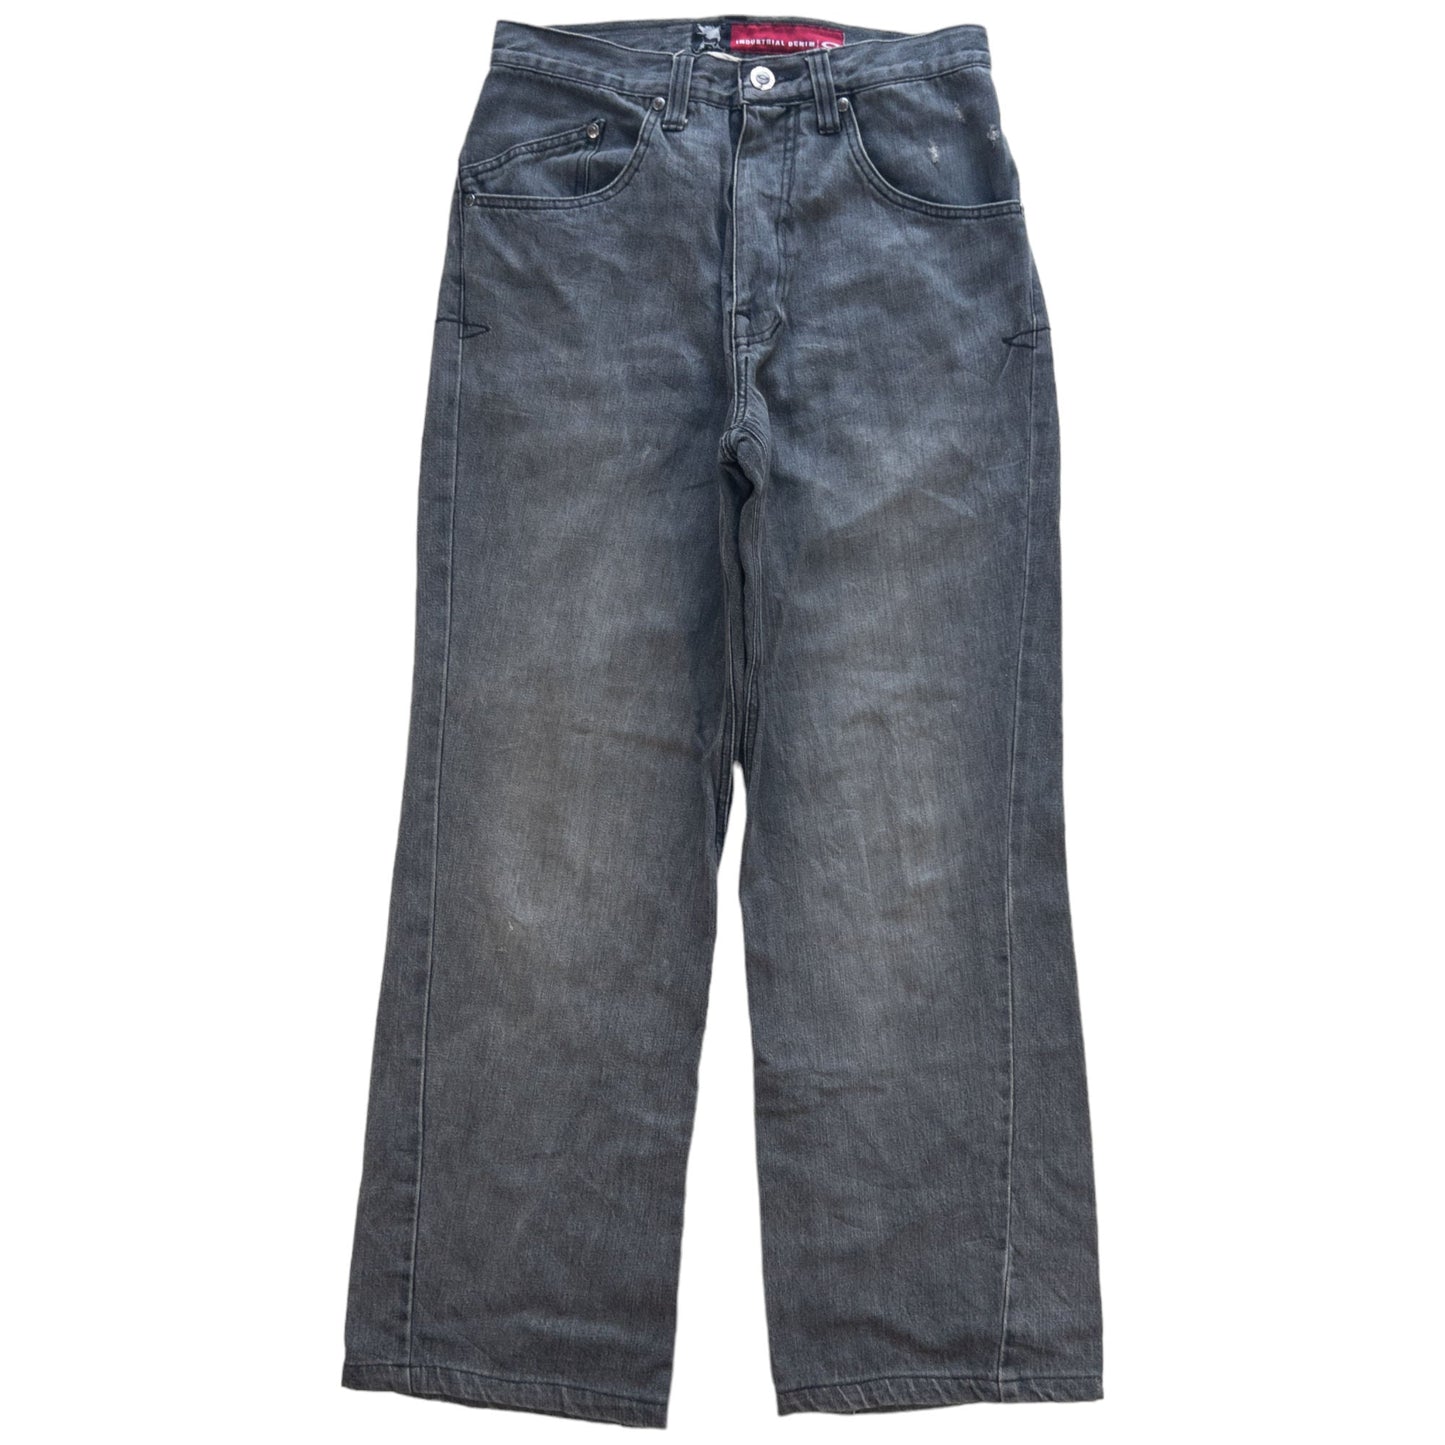 Vintage Oakley Industrial Denim Jeans Size W29